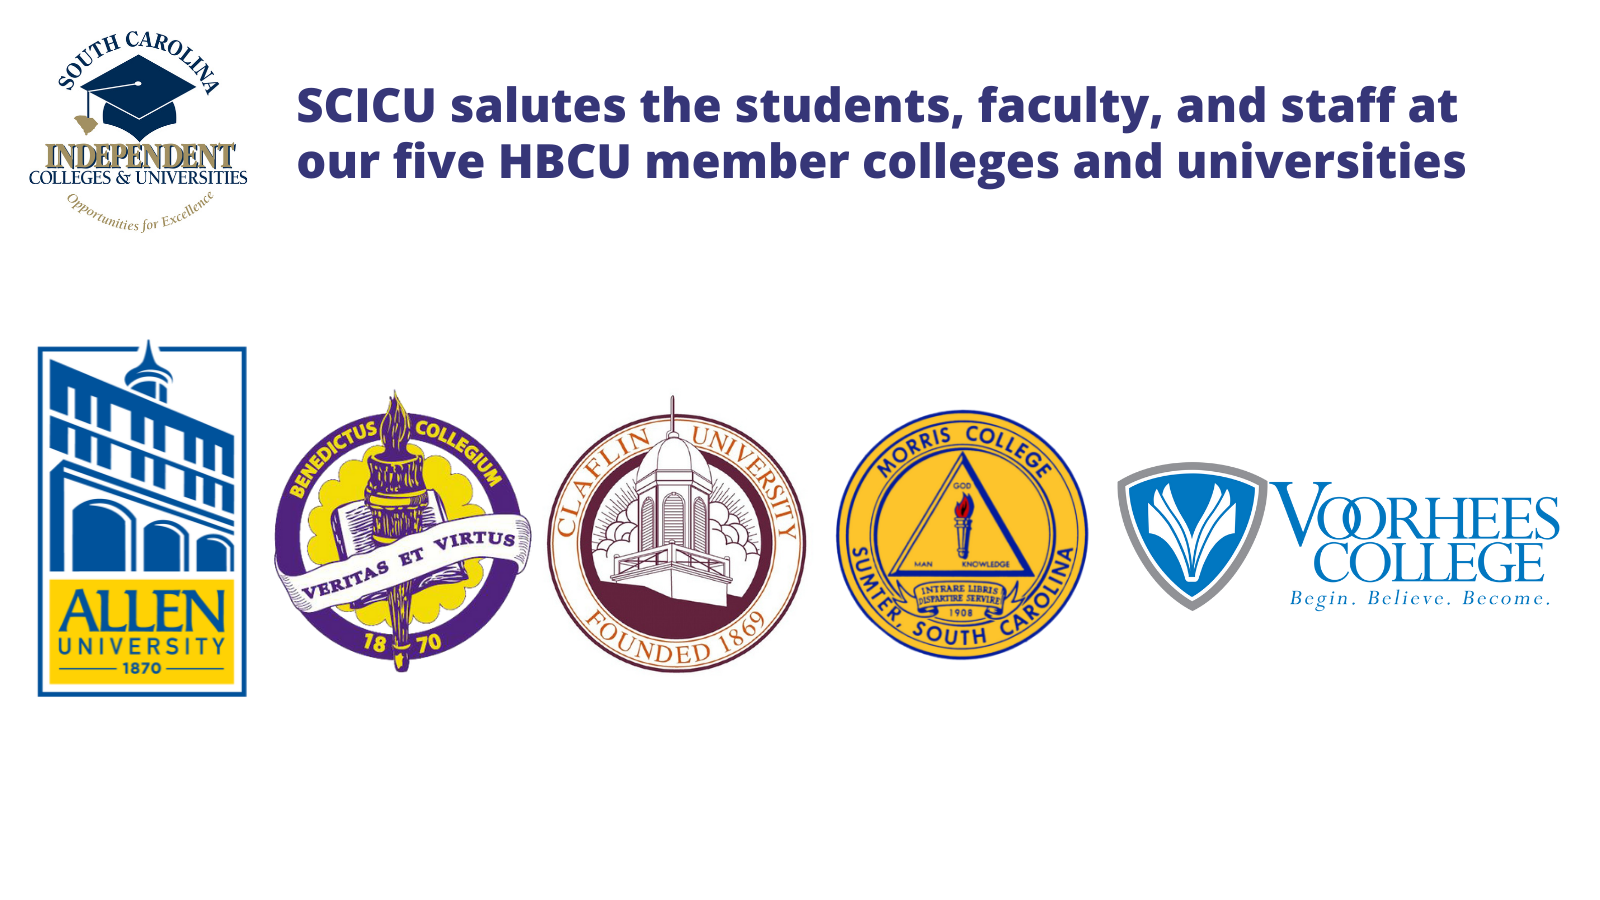 SCICU salutes its 5 HBCU members - Allen University, Benedict College, Claflin University, Morris College, and Voorhees College.